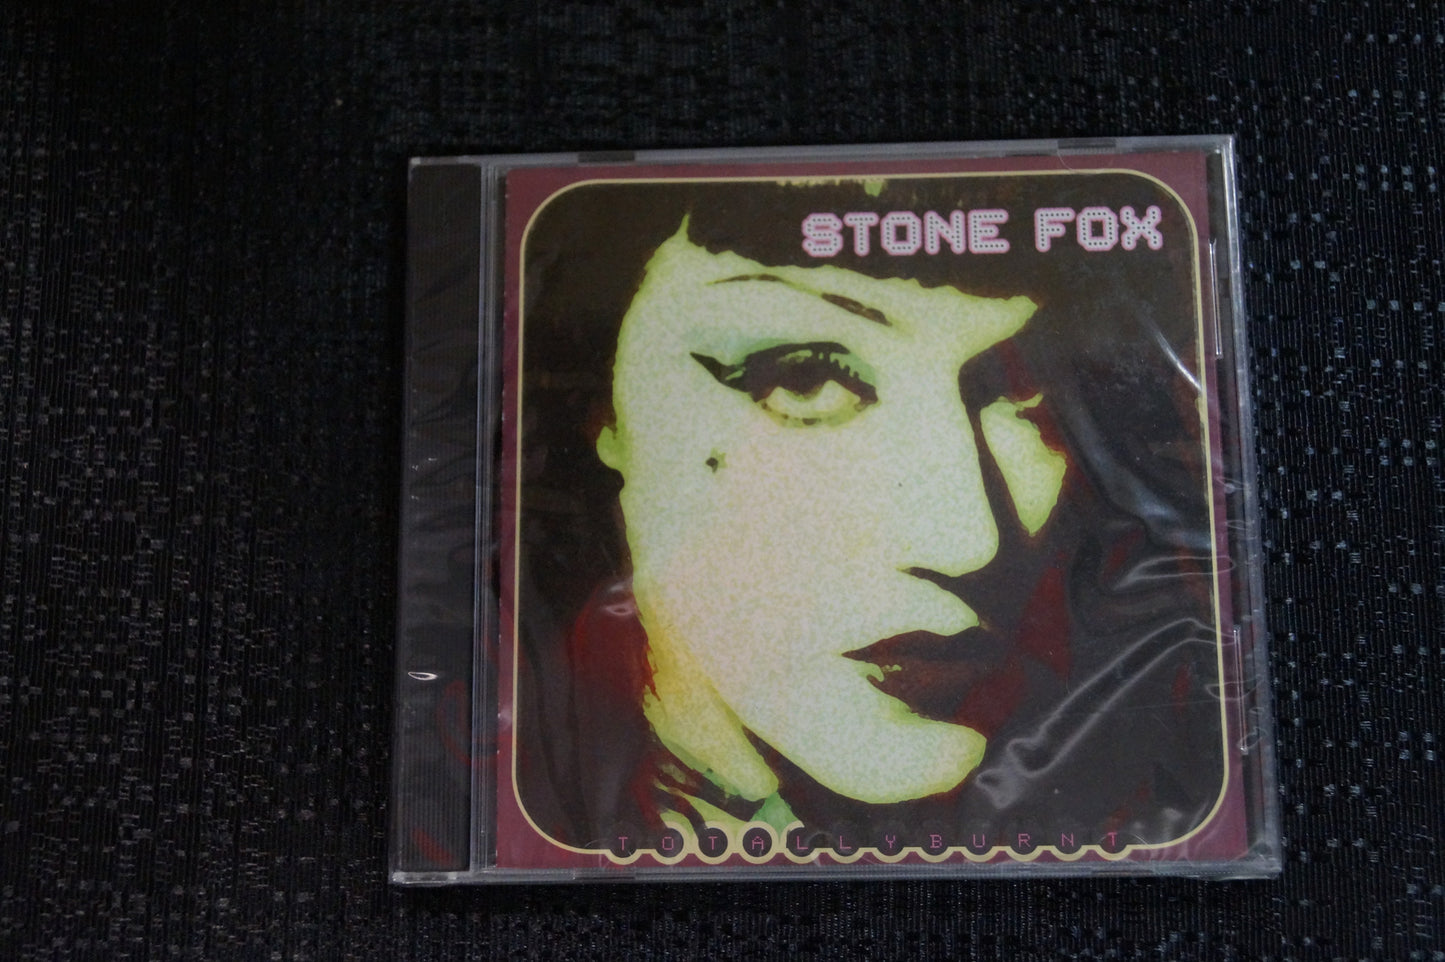 Stone Fox "Totally Burnt" 1998 CD Art By Kozik